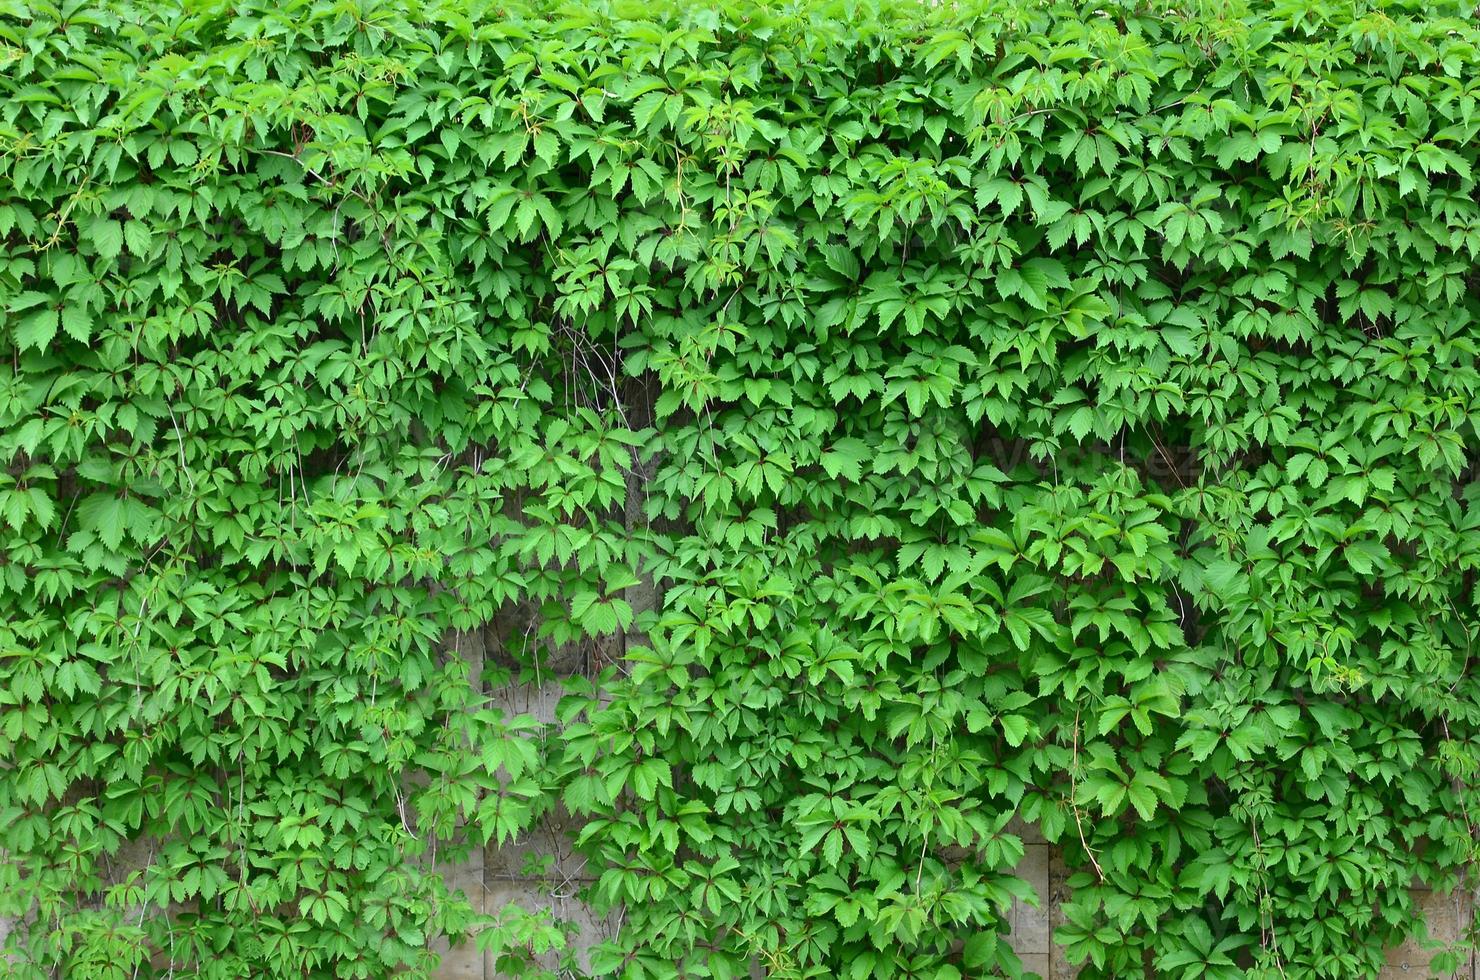 le lierre vert pousse le long du mur beige de carreaux peints. texture de fourrés denses de lierre sauvage photo